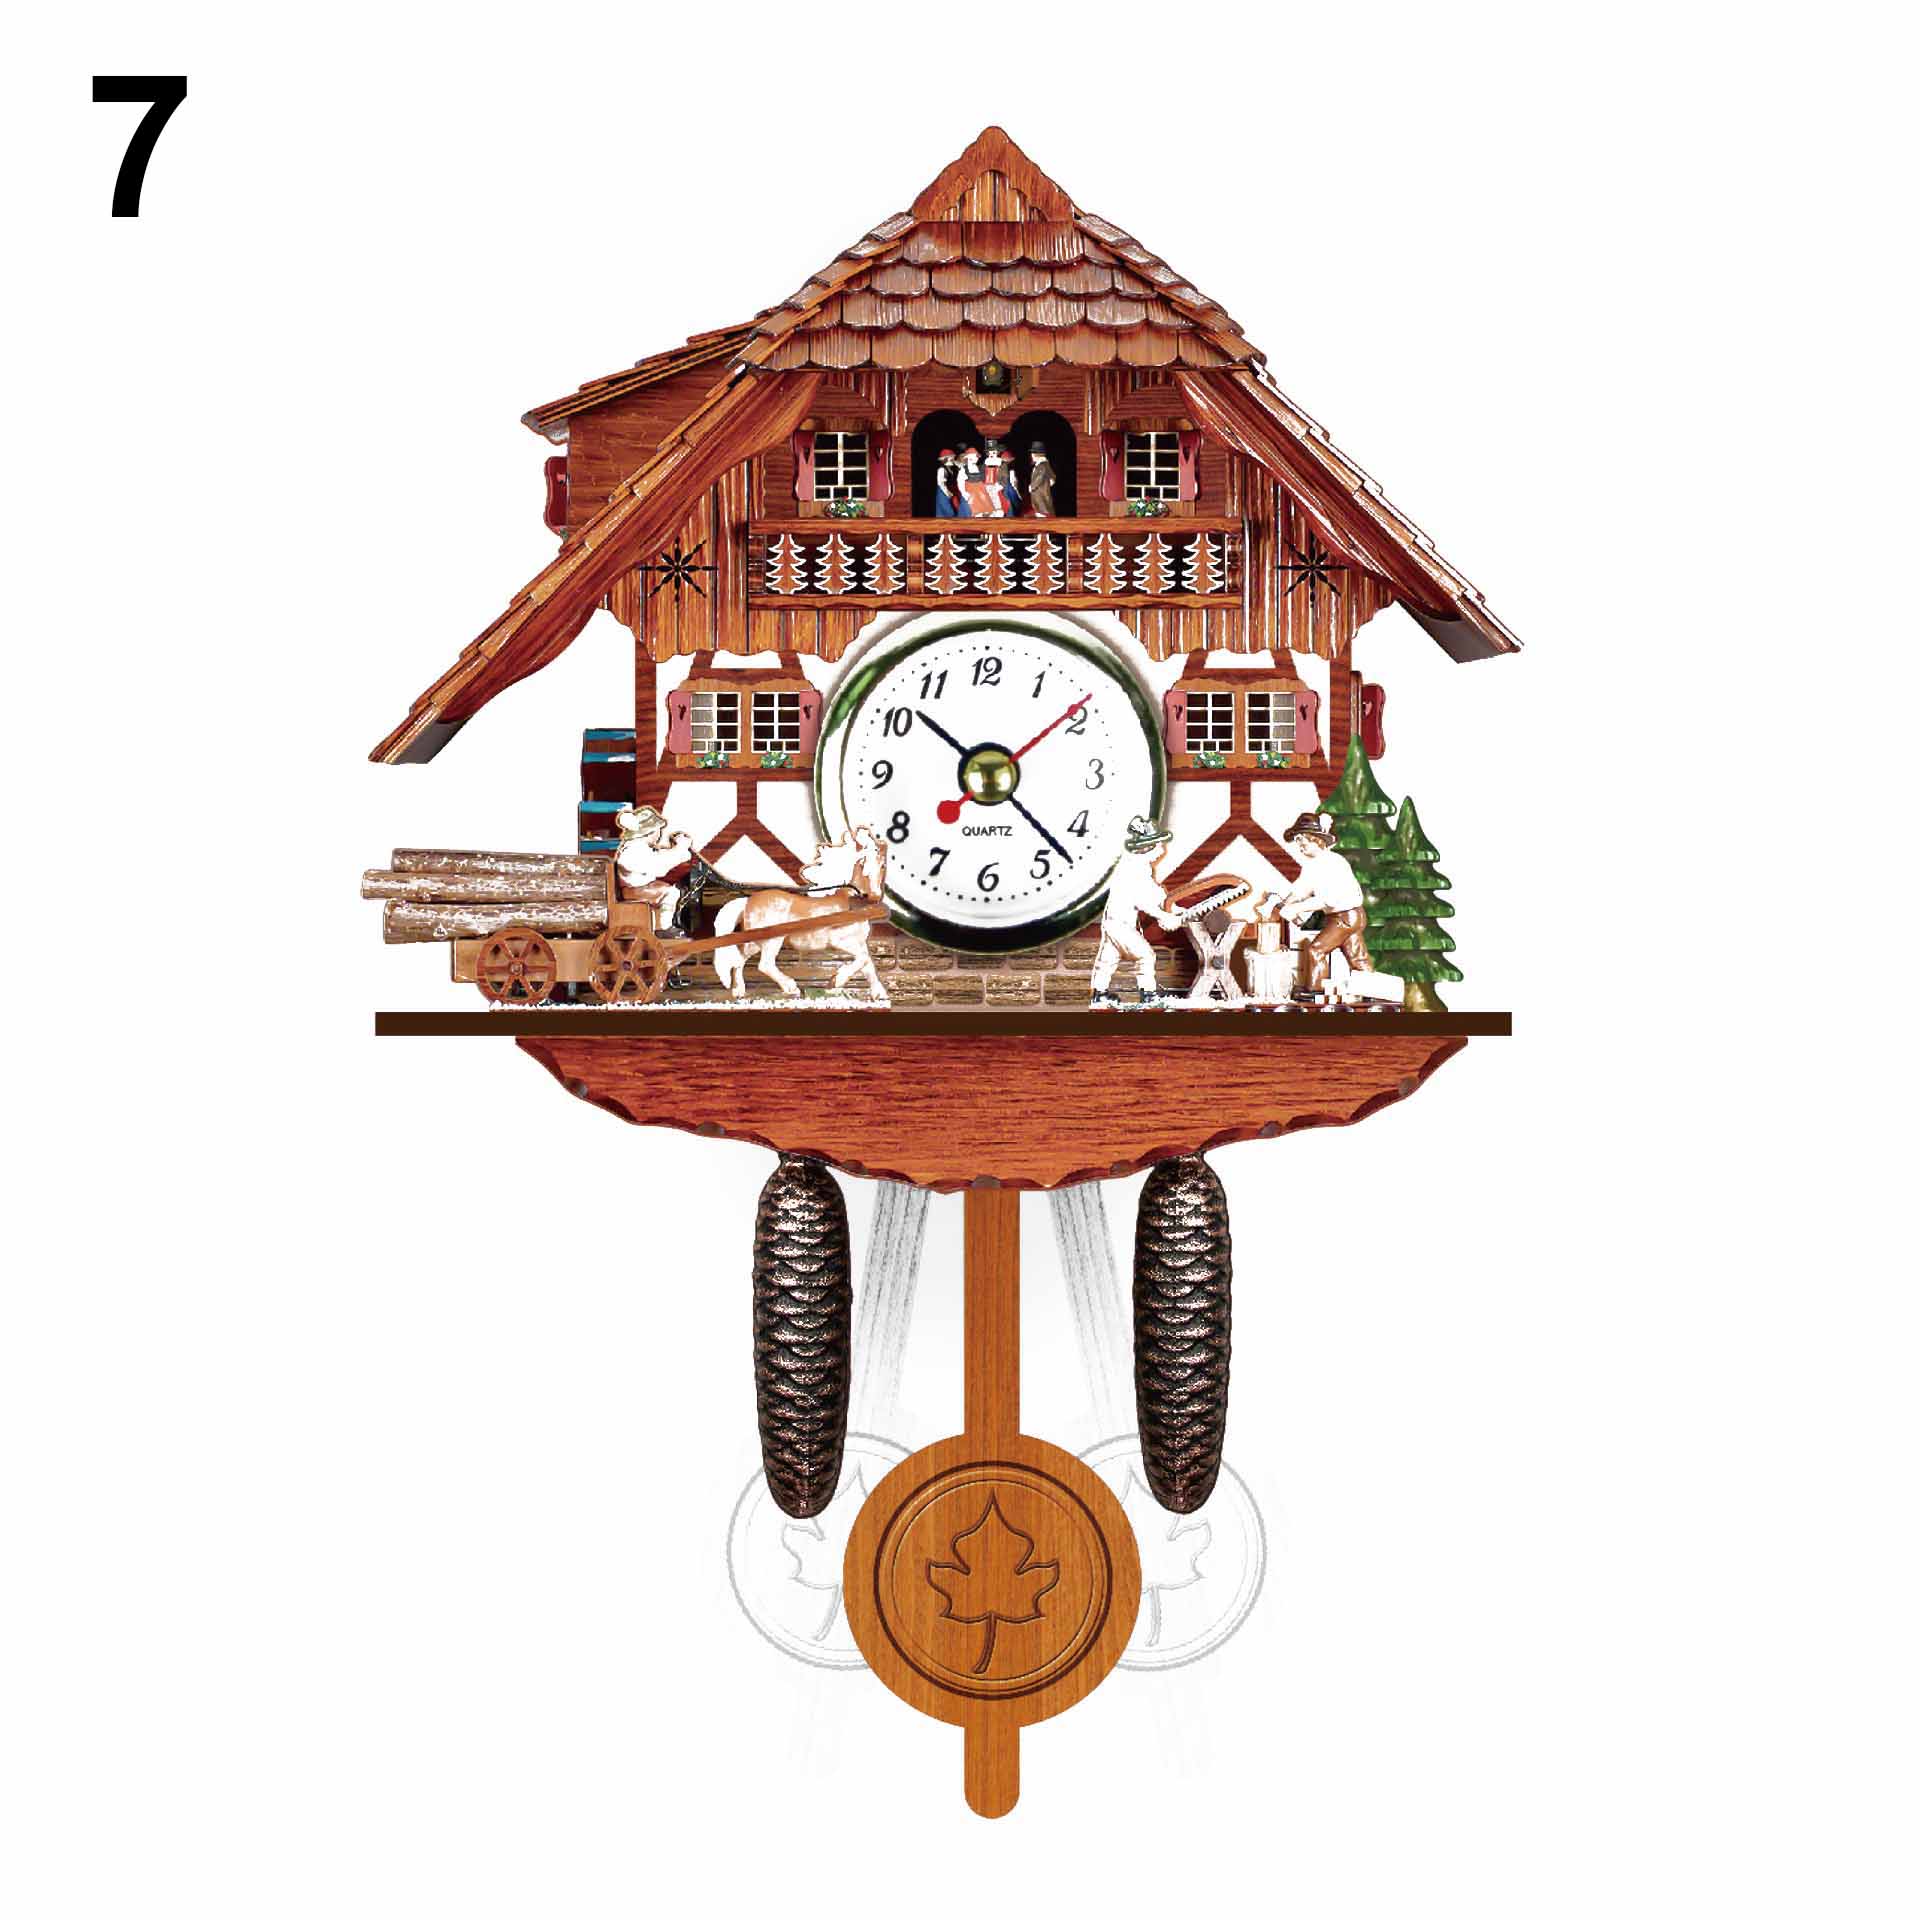 1 Pcs Antieke Houten Koekoek Wandklok Vogel Tijd Bell Swing Alarm Horloge Artistieke Home Decor Vc: style 7